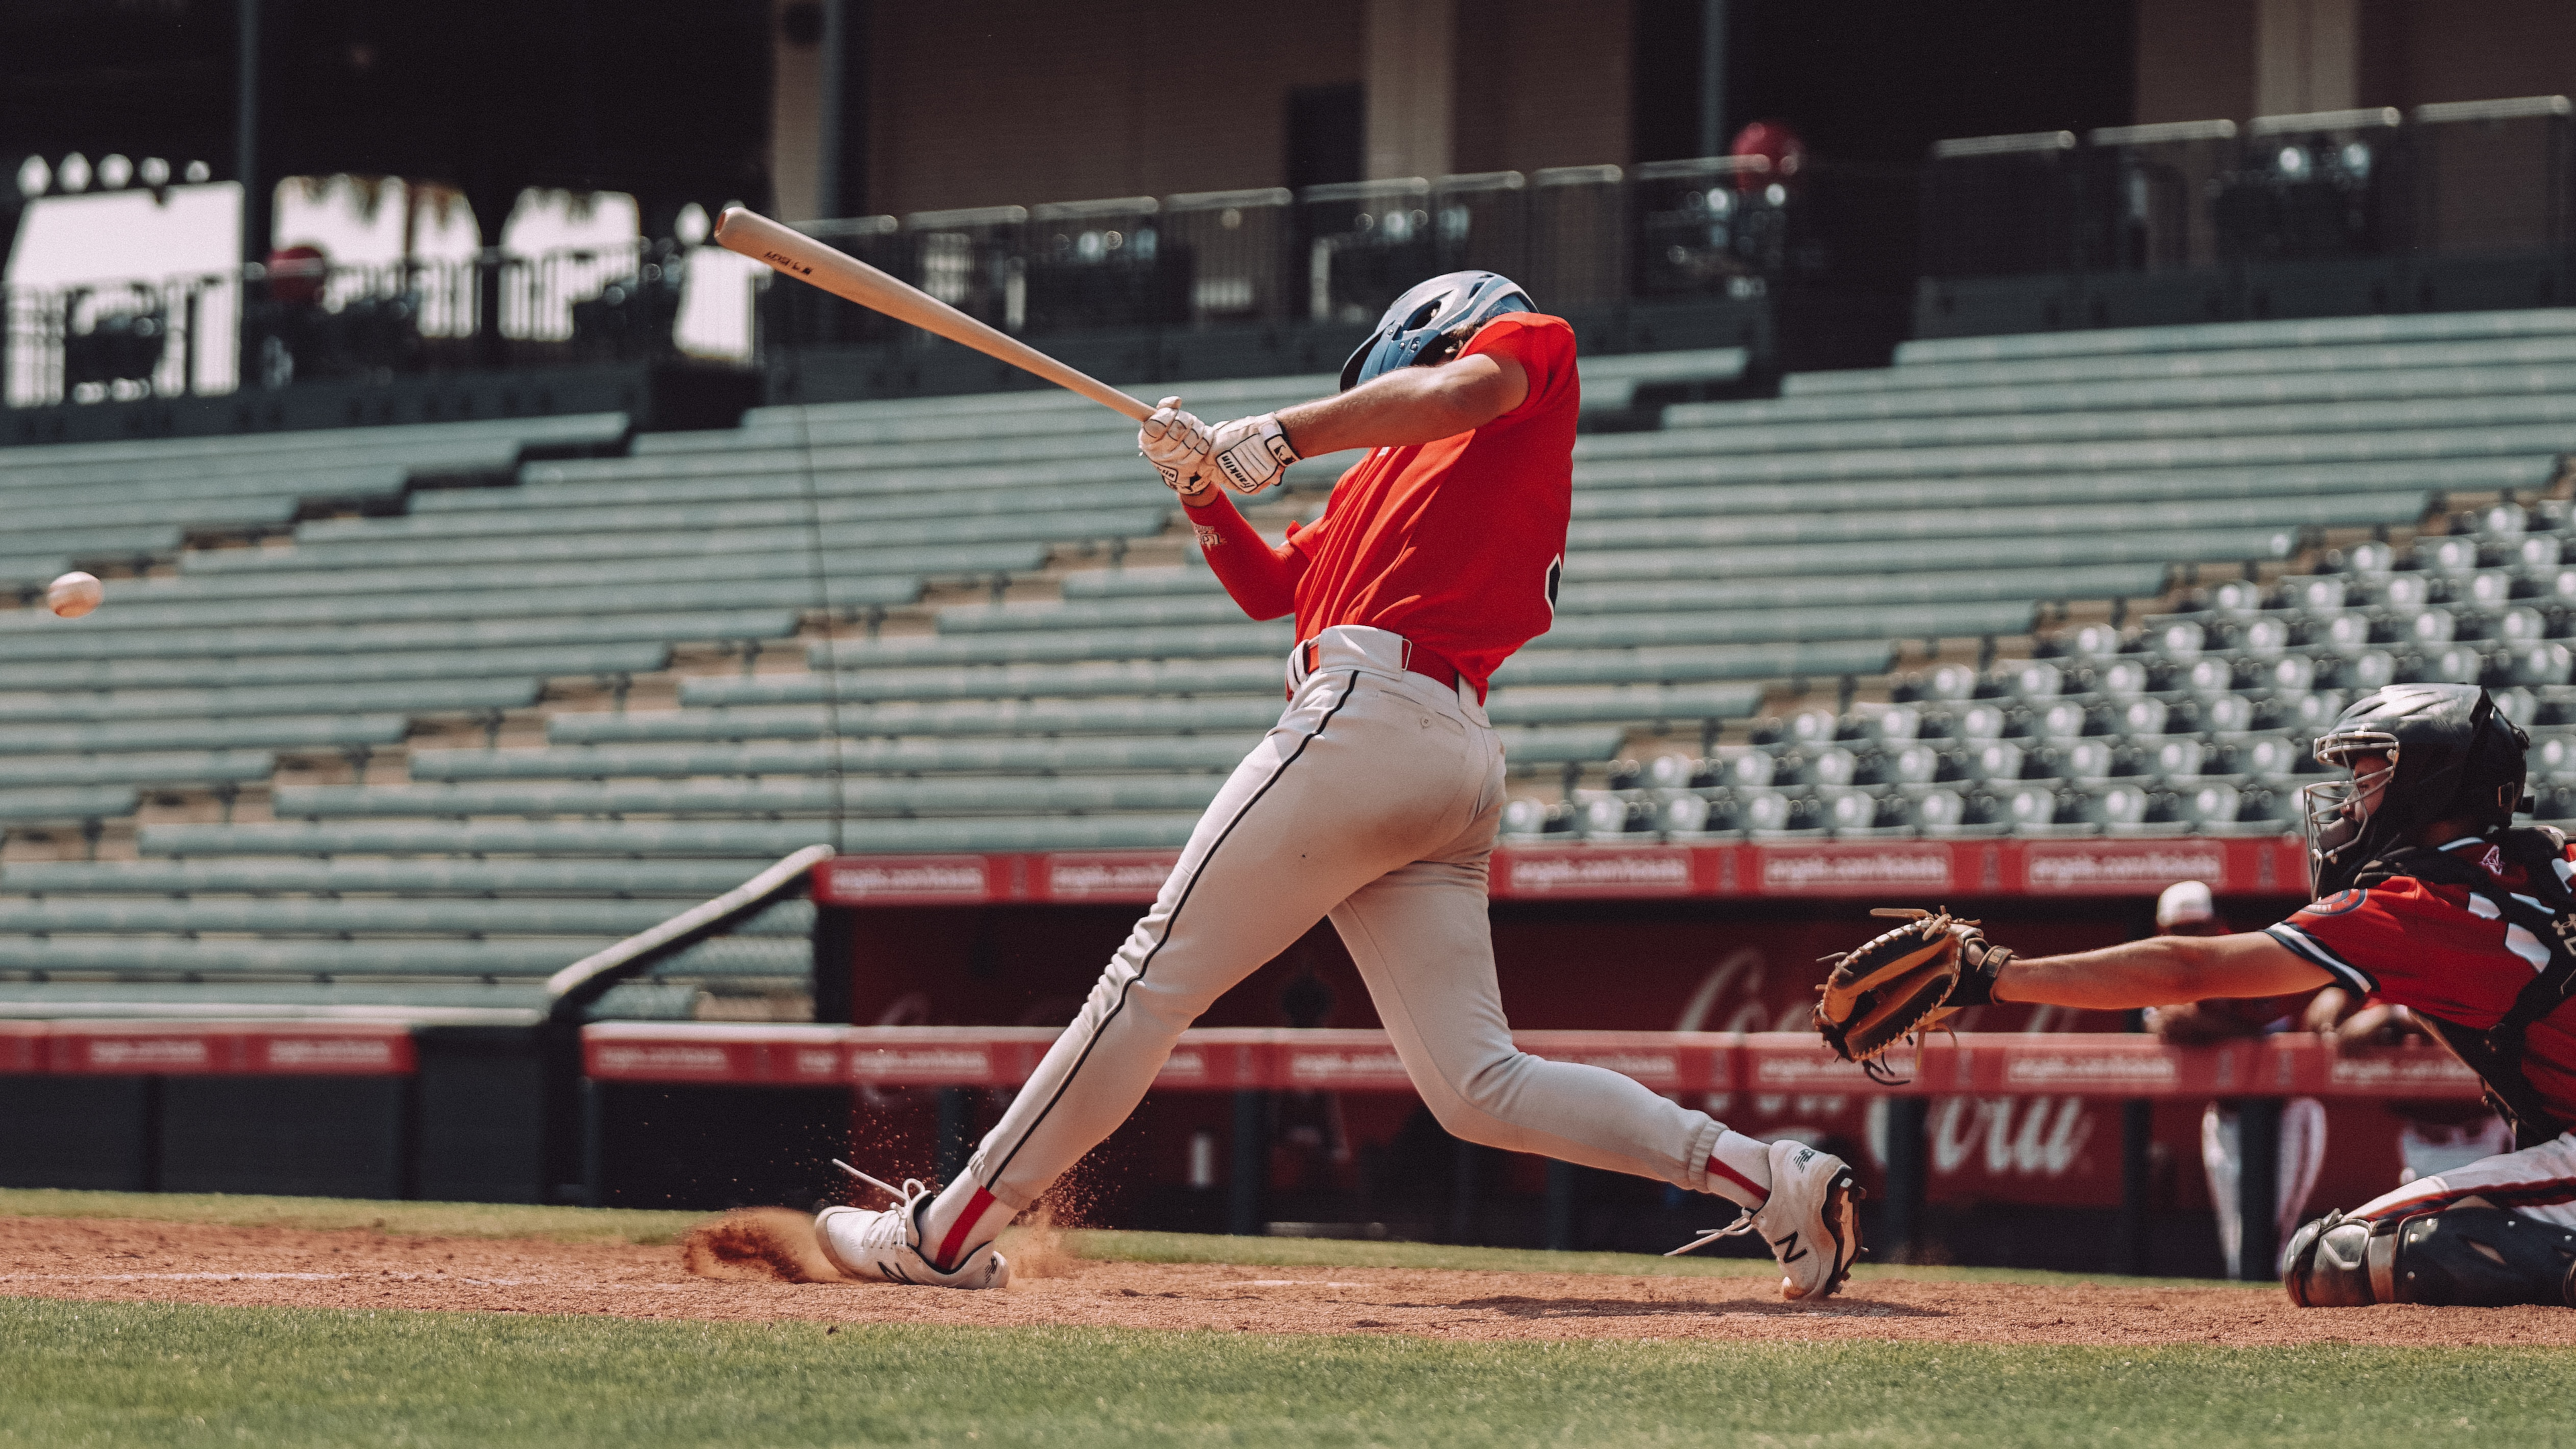 A baseball player swinging a corked bat